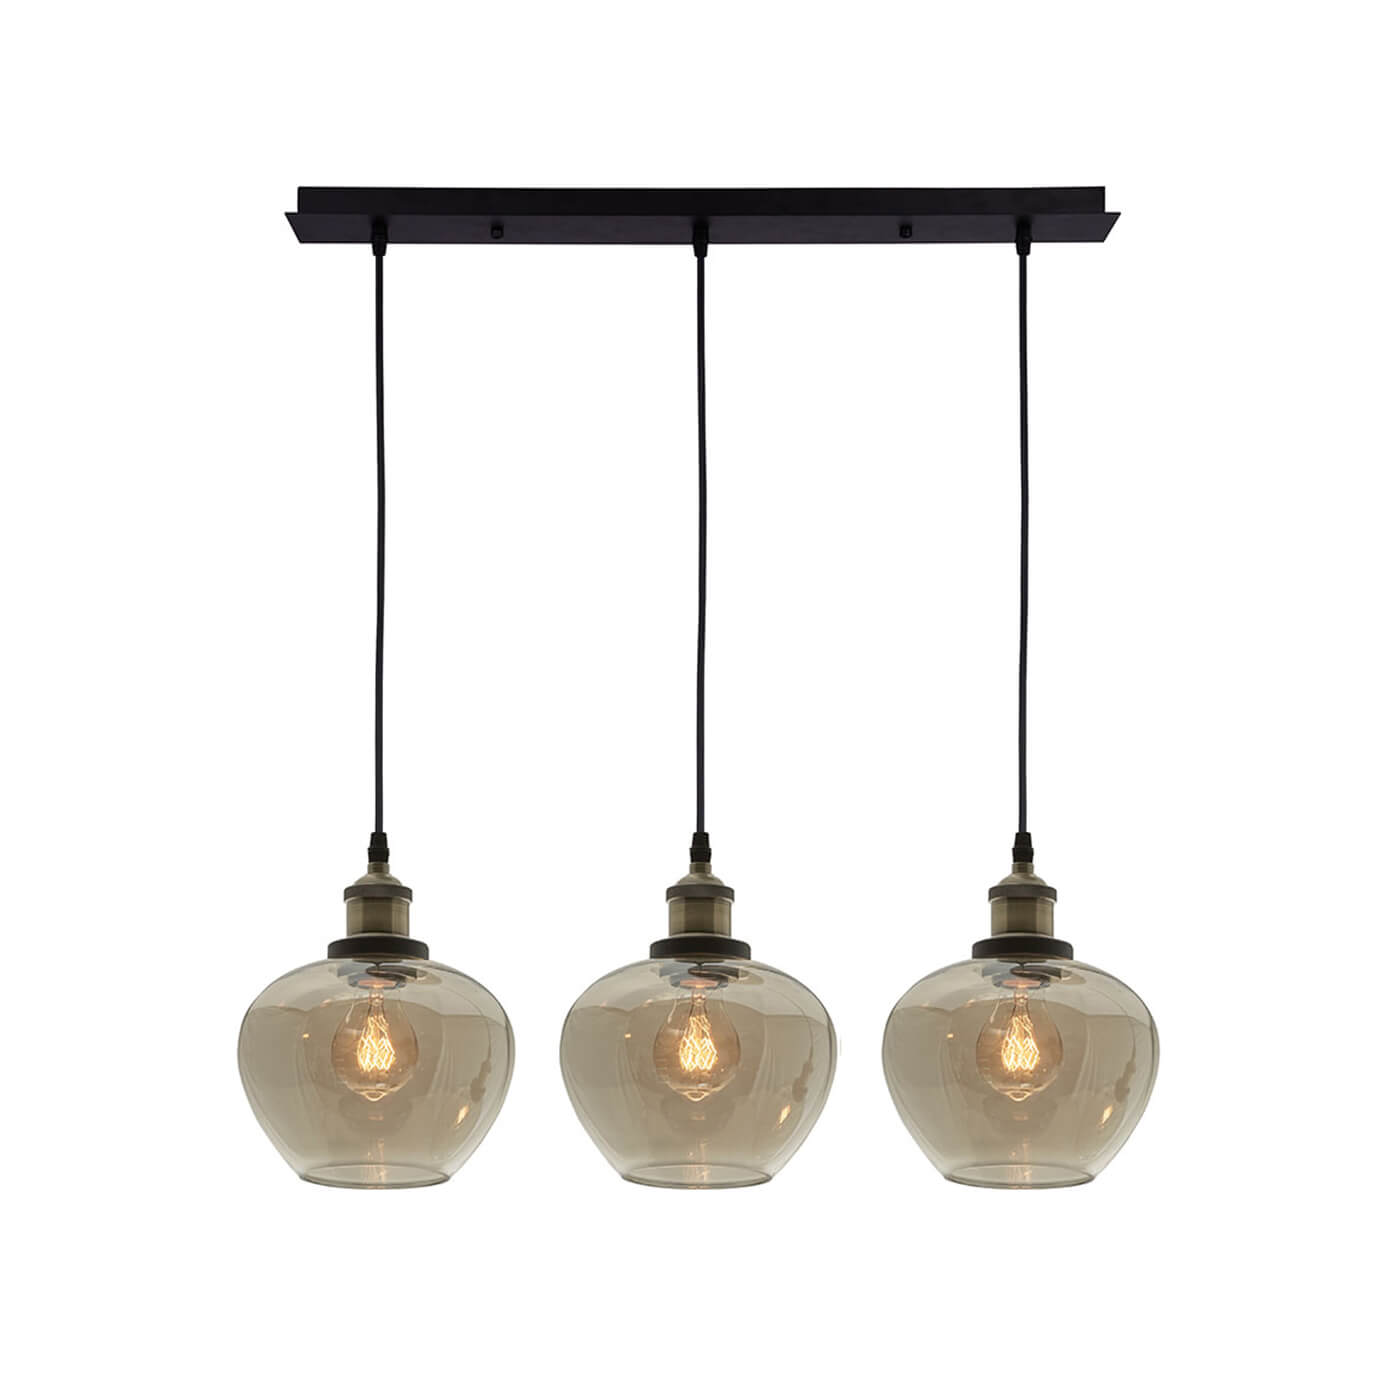 Cauti o lampa suspendata neagra JONAS S3L cu abajur ambrat, design modern, elegant, pentru living, dining sau dormitor din colectia de lustre si candelabre Domicilio?